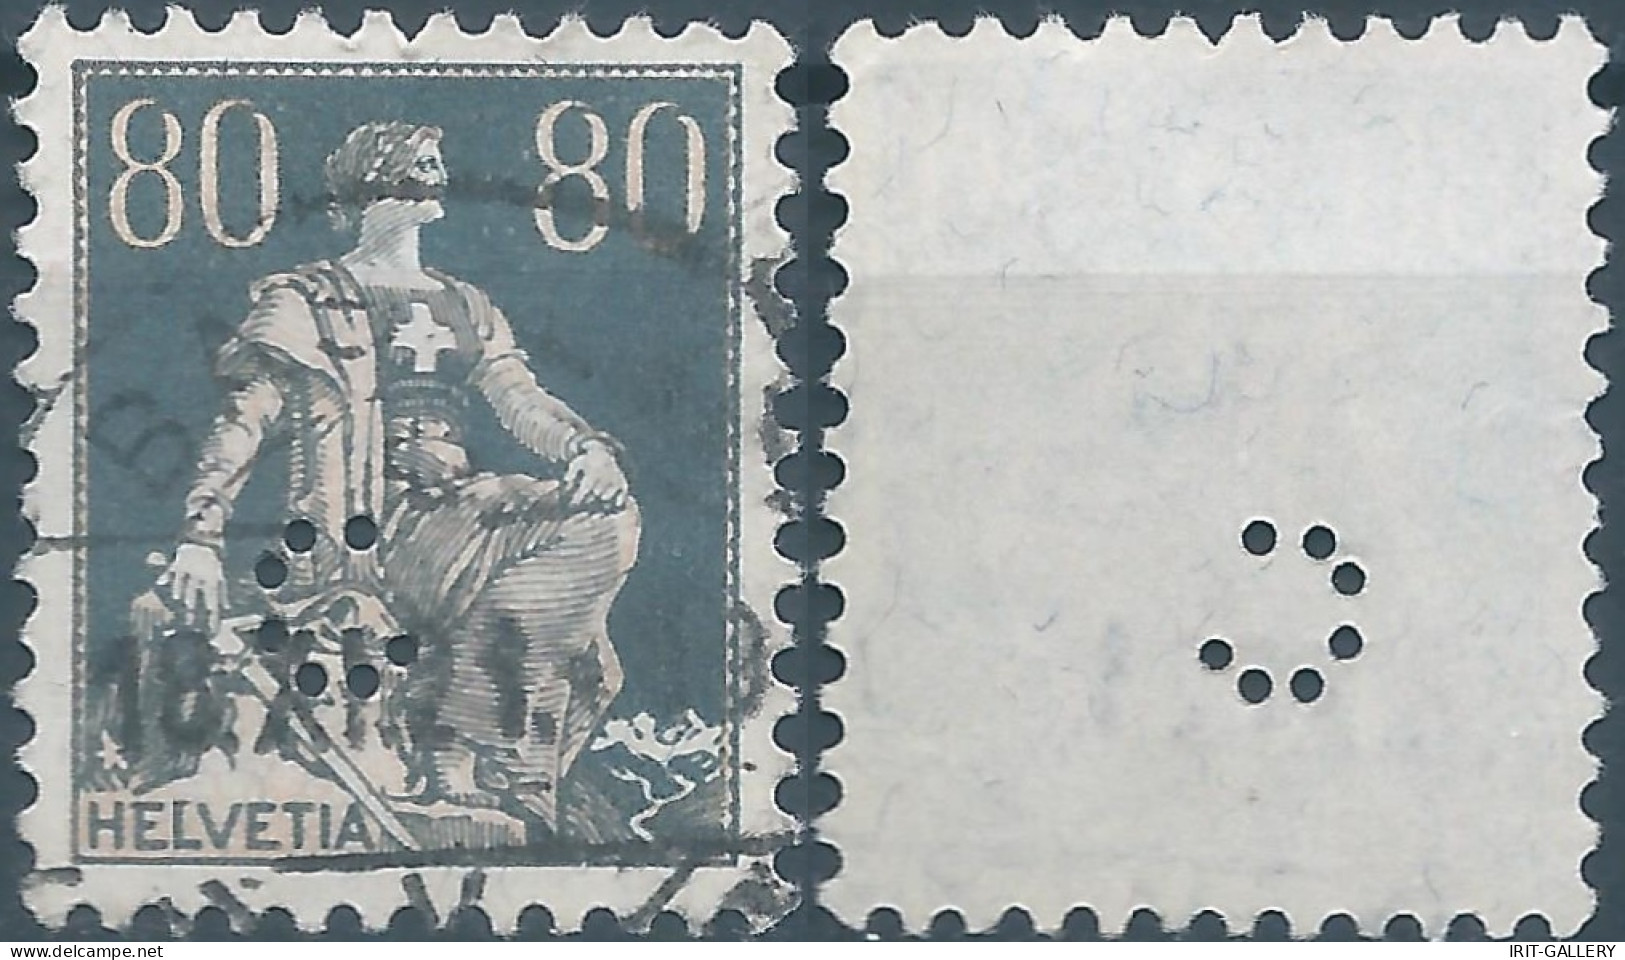 Svizzera-Switzerland-Schweiz-Suisse,HELVETIA,1915 -1918 , Helvetia With The Sword 80(C)grey (PERFIN) - Perforés